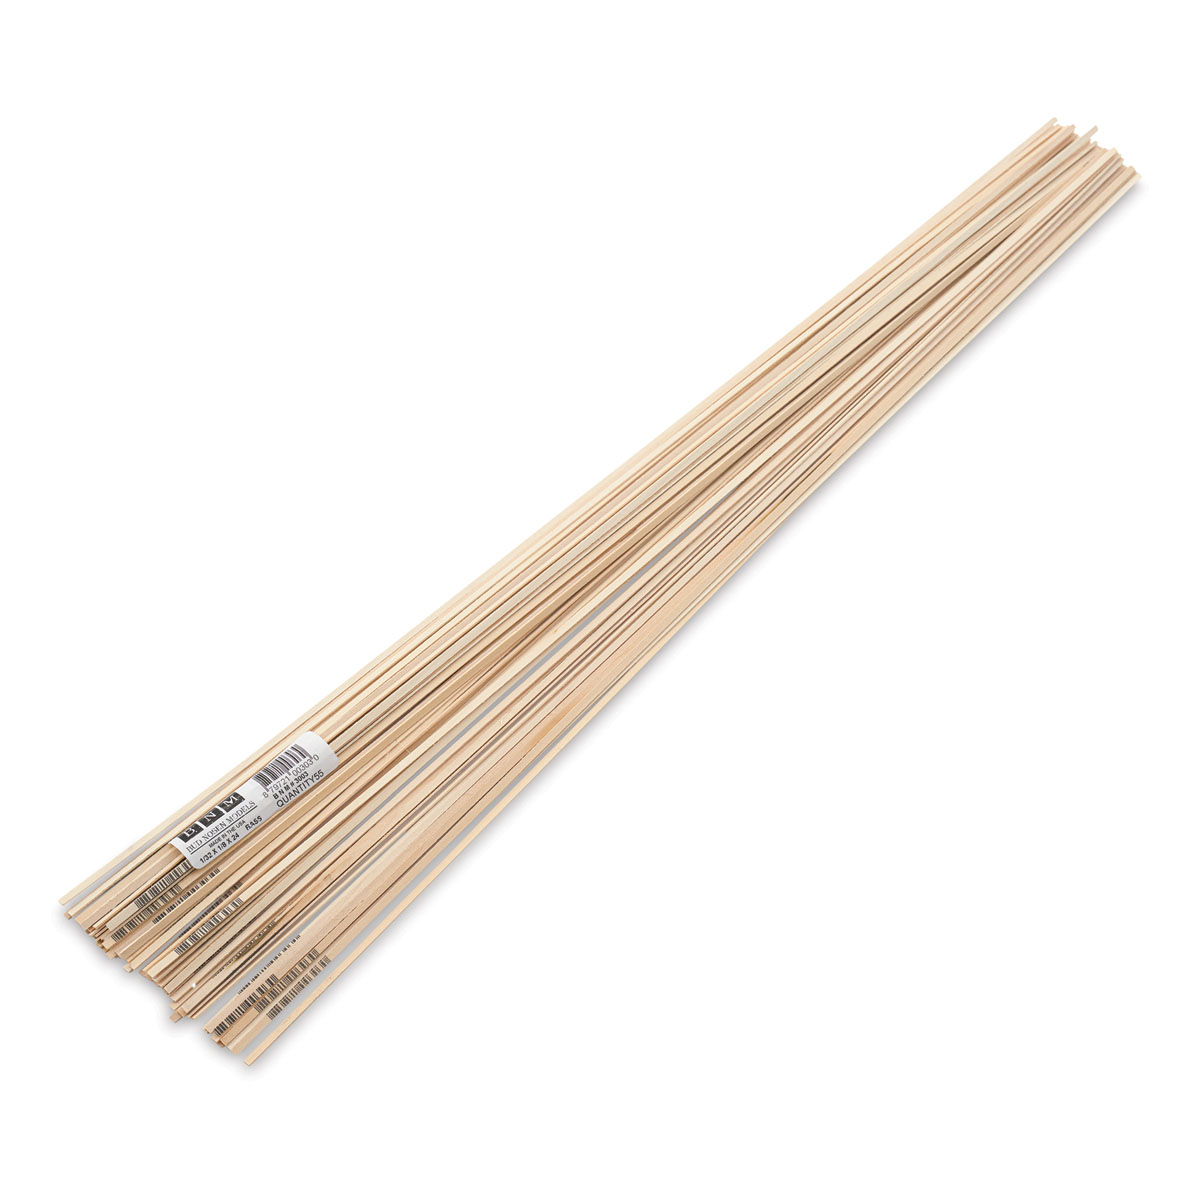 Bud Nosen Balsa Wood Sticks - 1/4 x 1/2 x 36, Pkg of 12